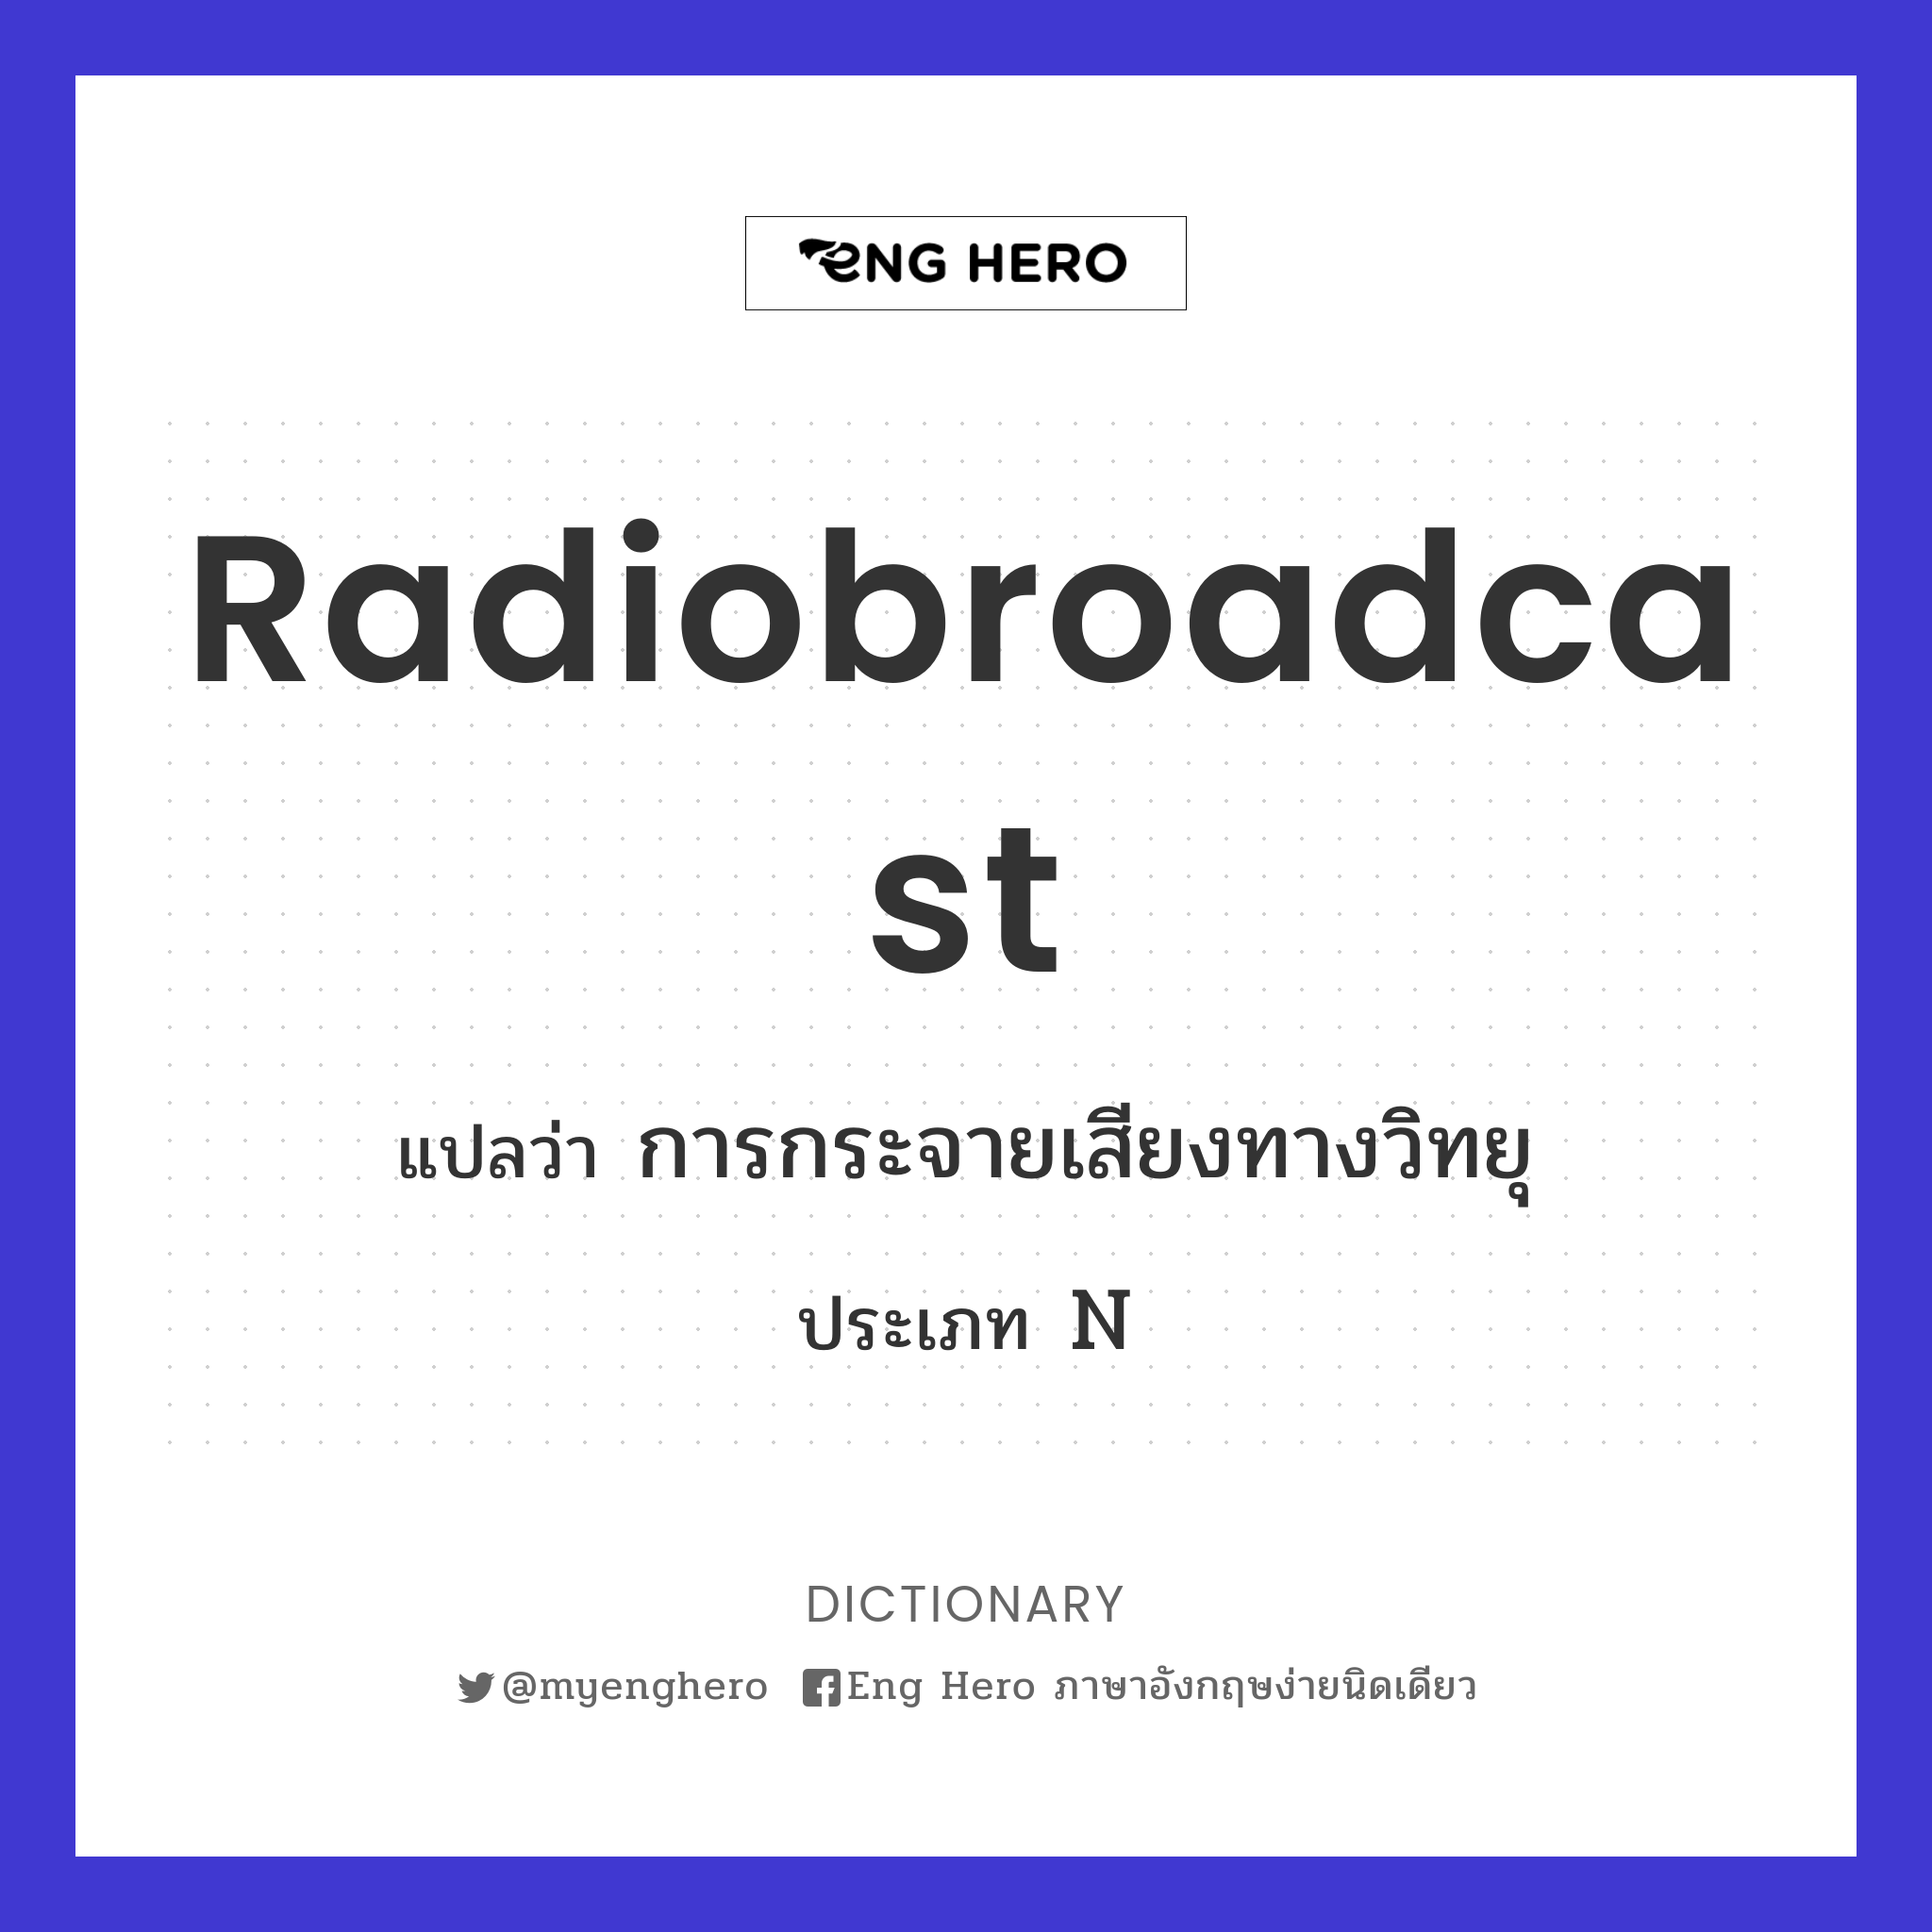 radiobroadcast